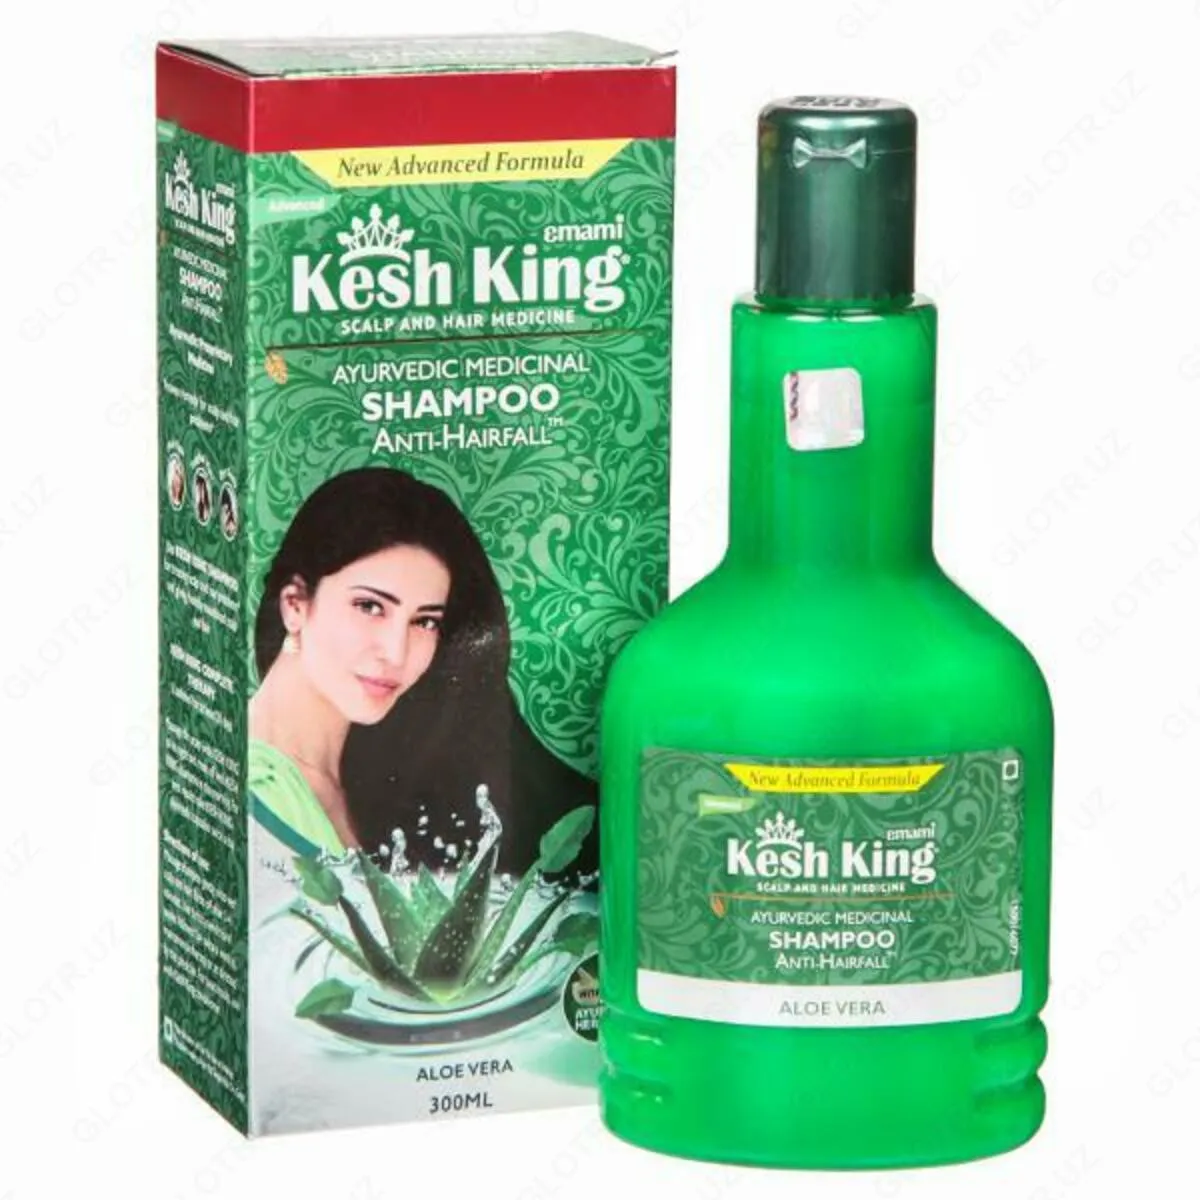 Аюрведический лечебный шампунь против выпадения волос Kesh King (200 мл)#1